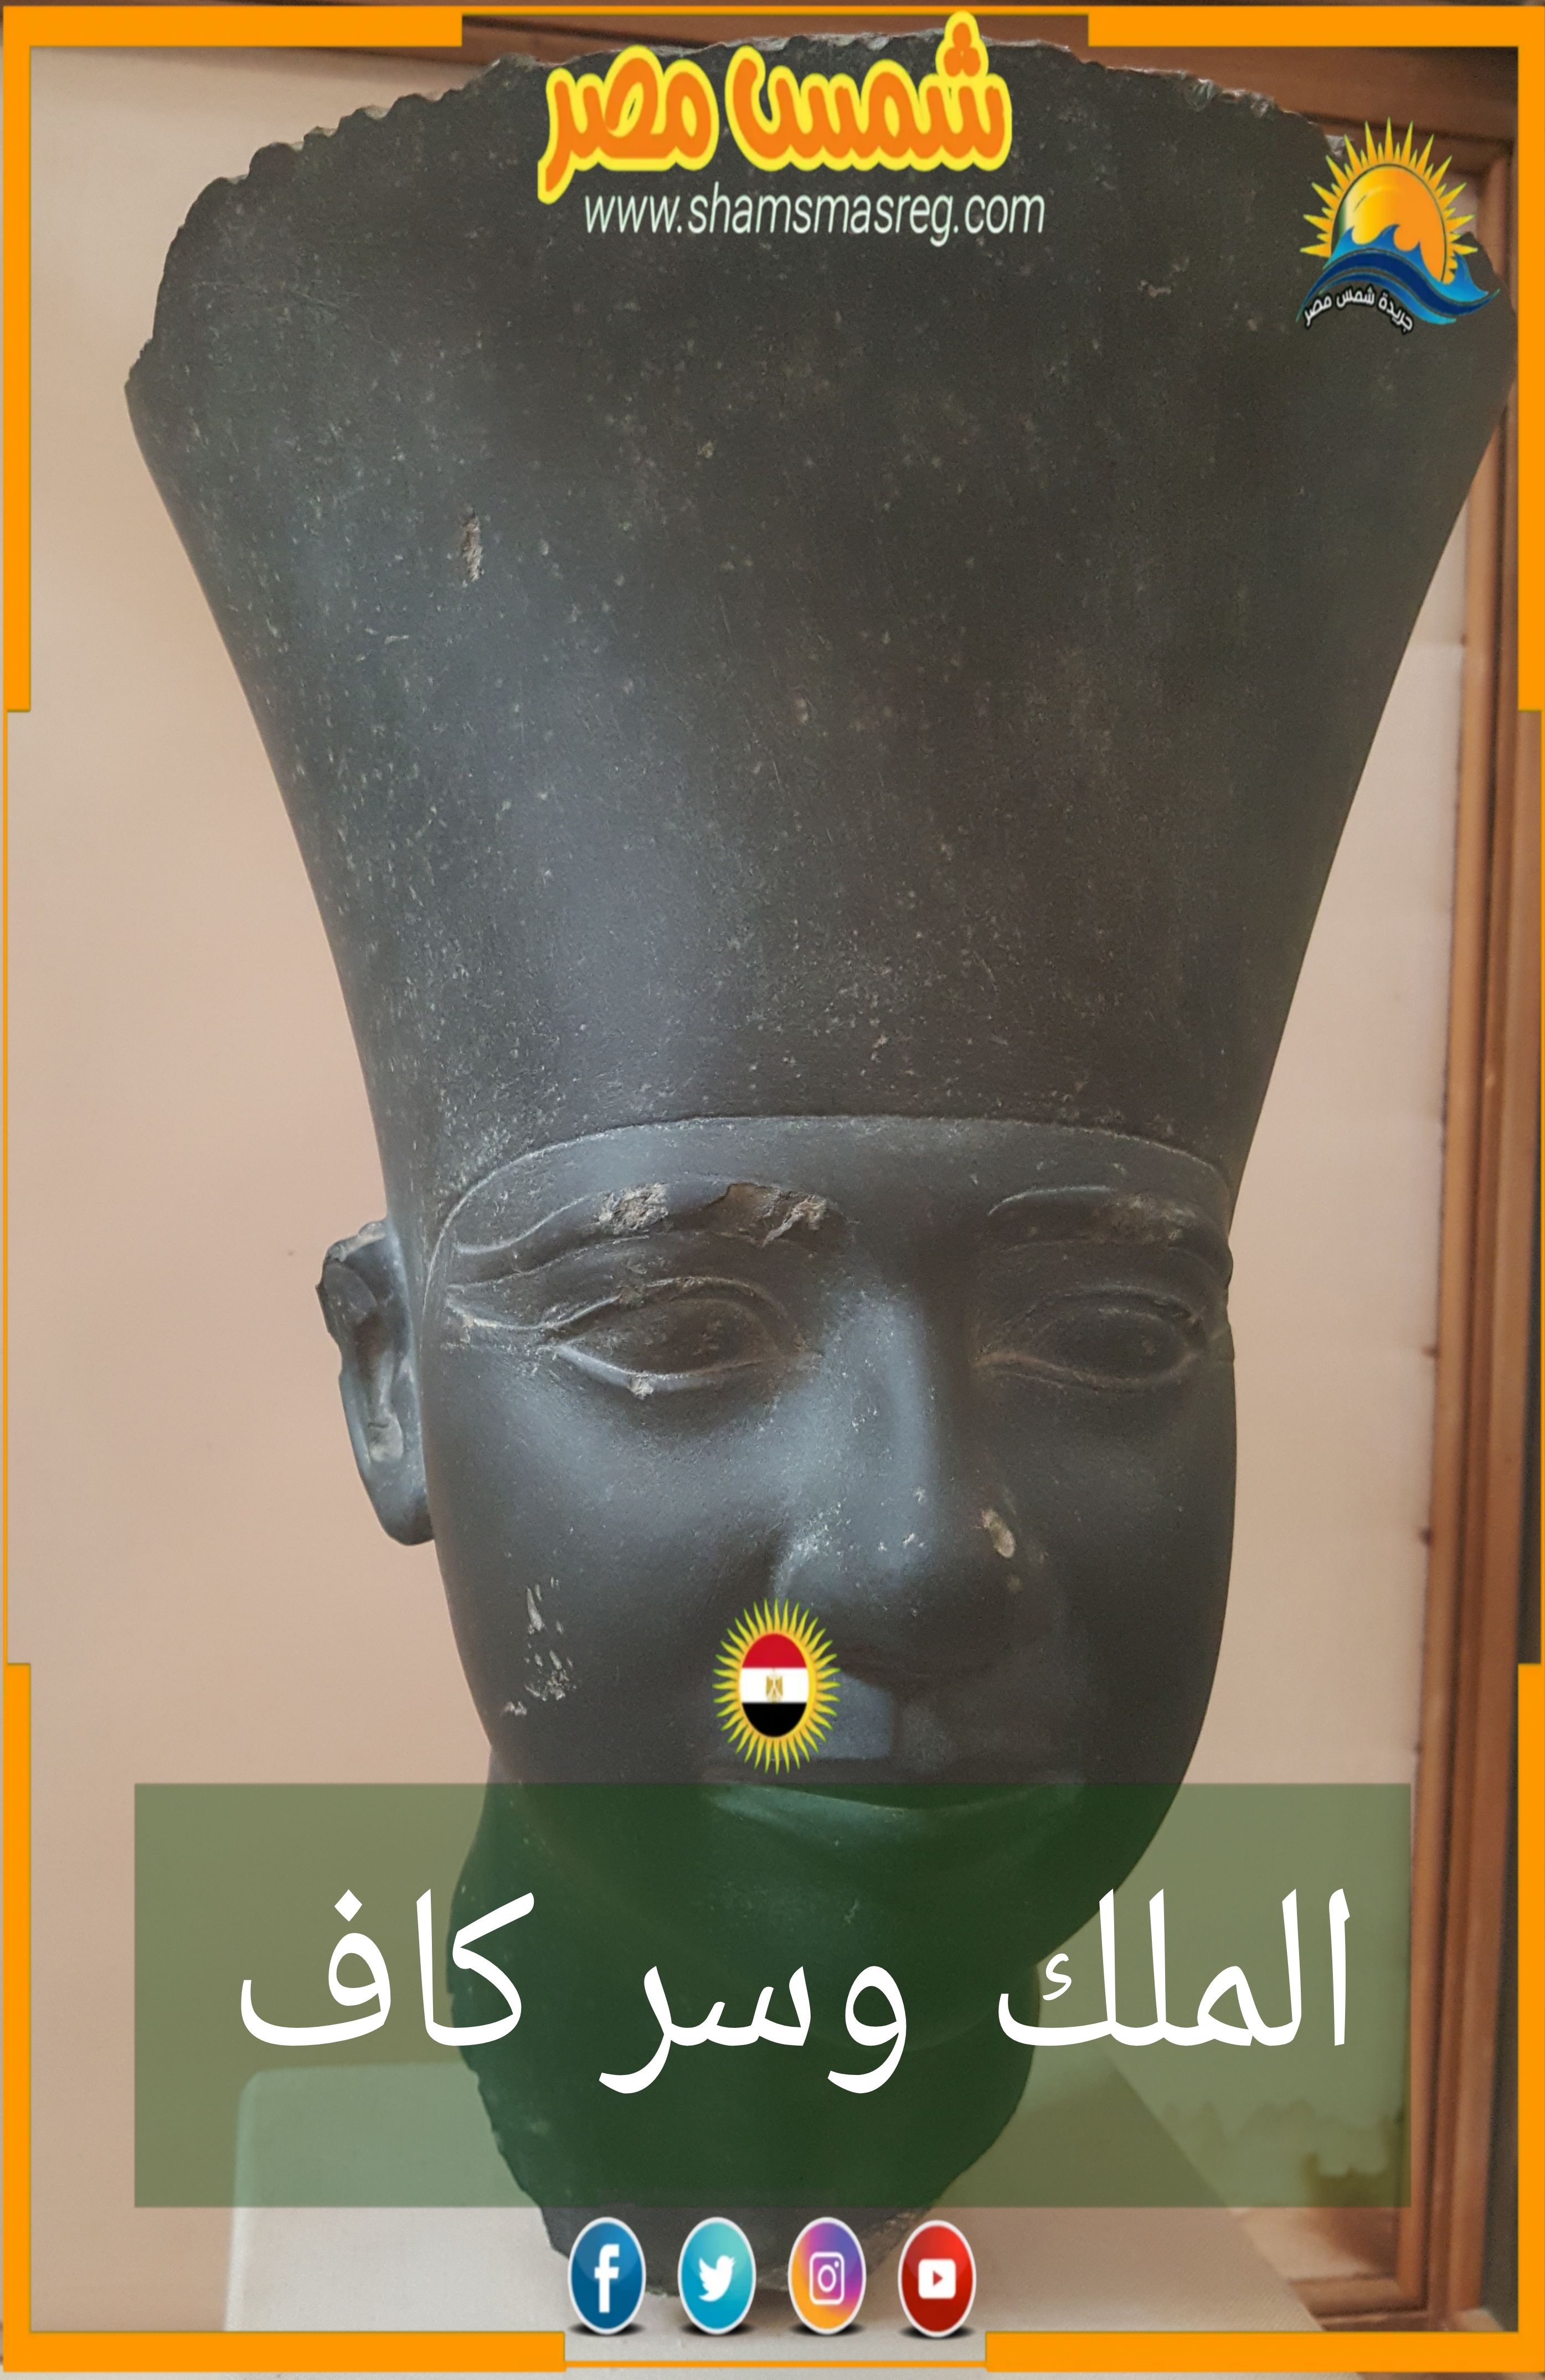 شمس مصر/ الملك وسر كاف